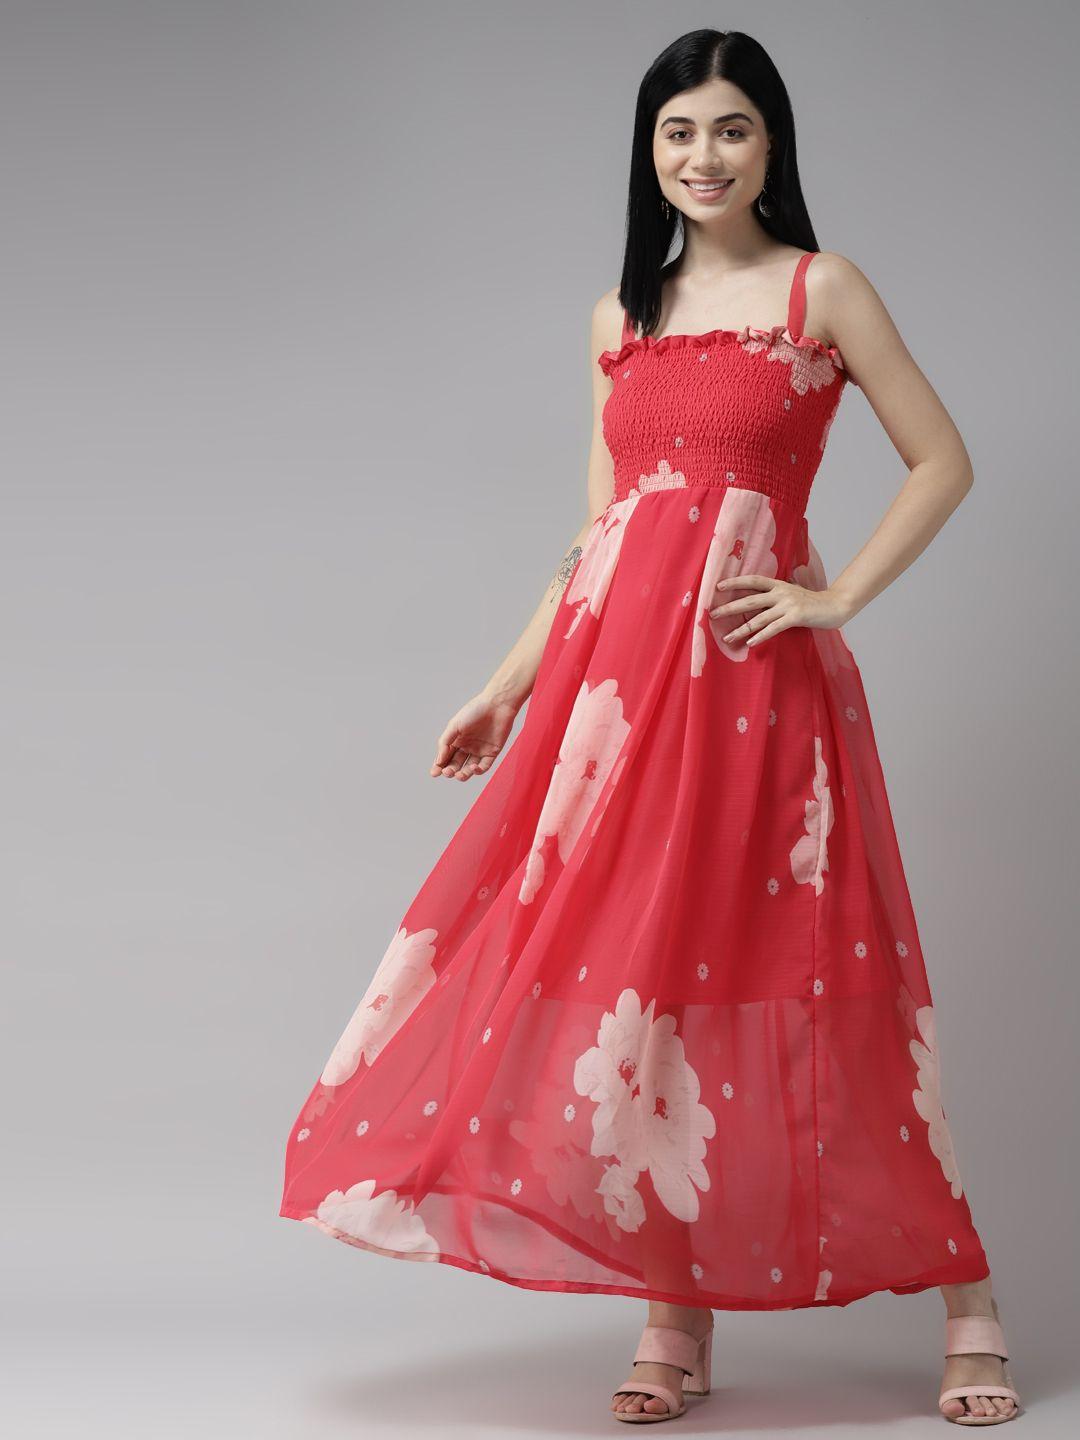 aarika coral red & beige floral print georgette maxi dress